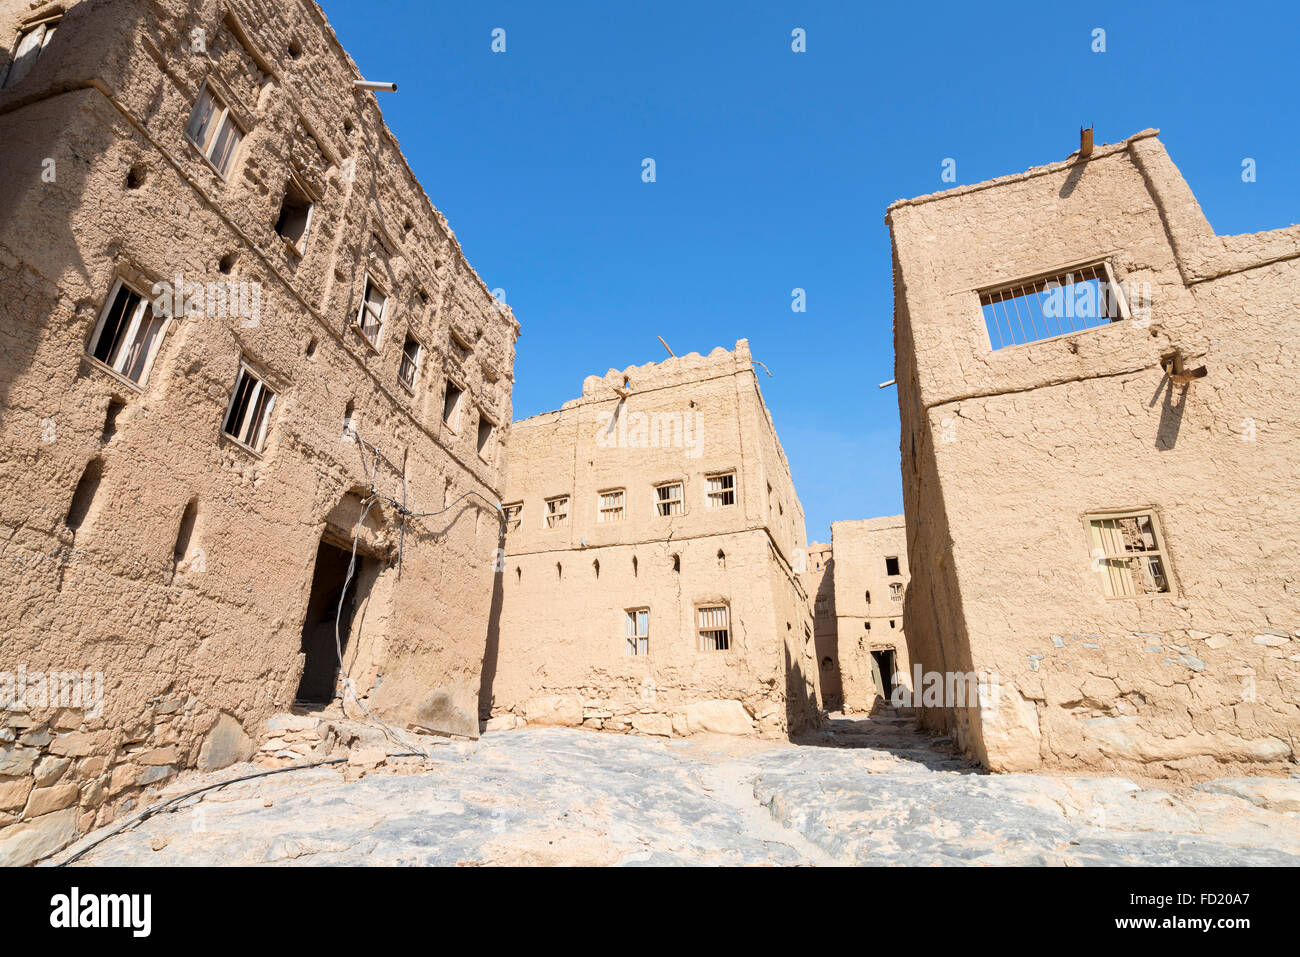 Vue de l'abandon des vieilles maisons en torchis à Al Hamra Oman Banque D'Images